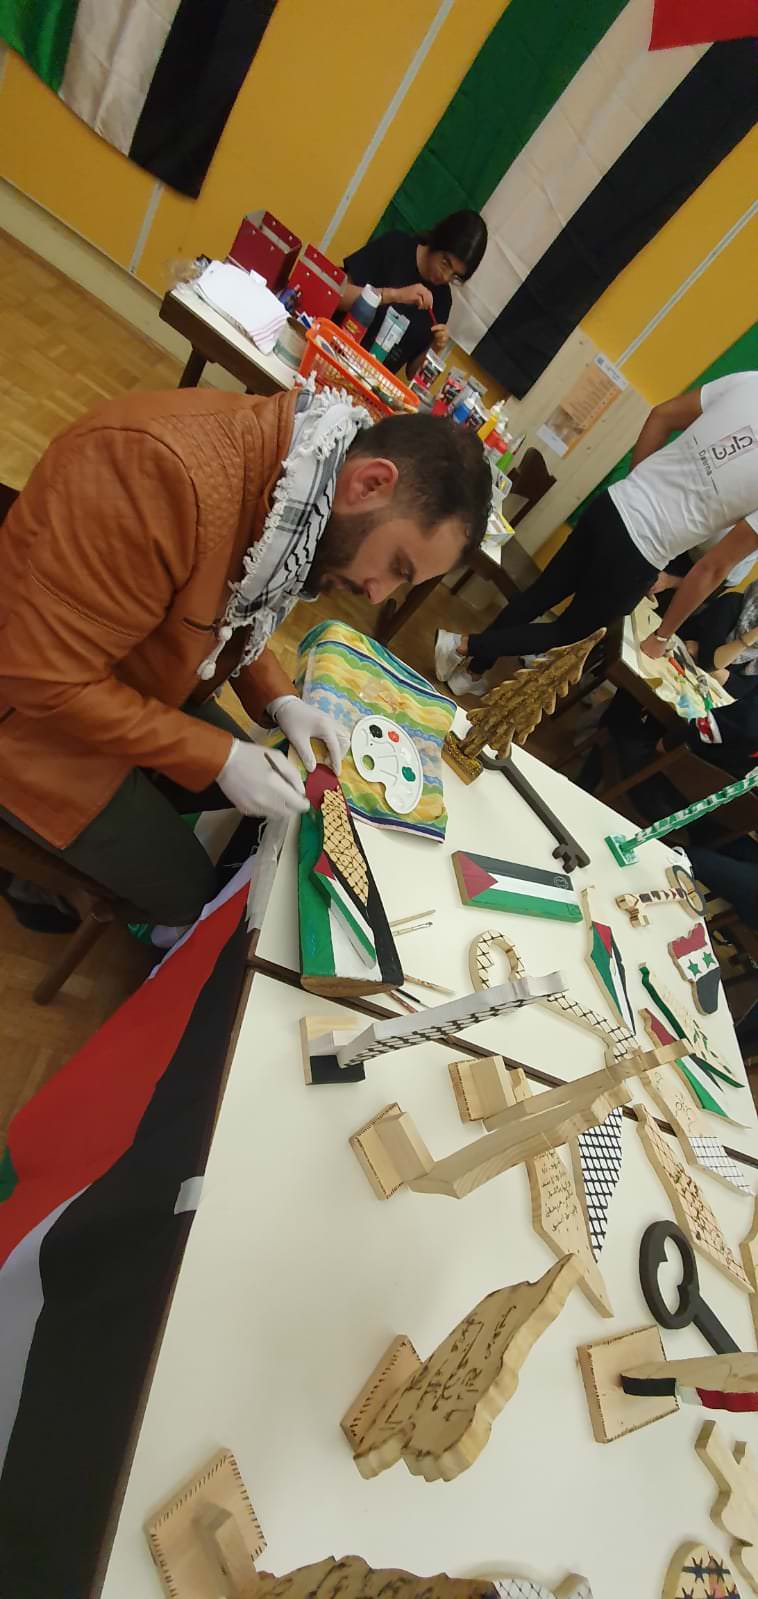 في ذكرى يوم التضامن العالمي مع الشعب الفلسطيني قام مركز دارنا في جنوب المانيا Erlangen